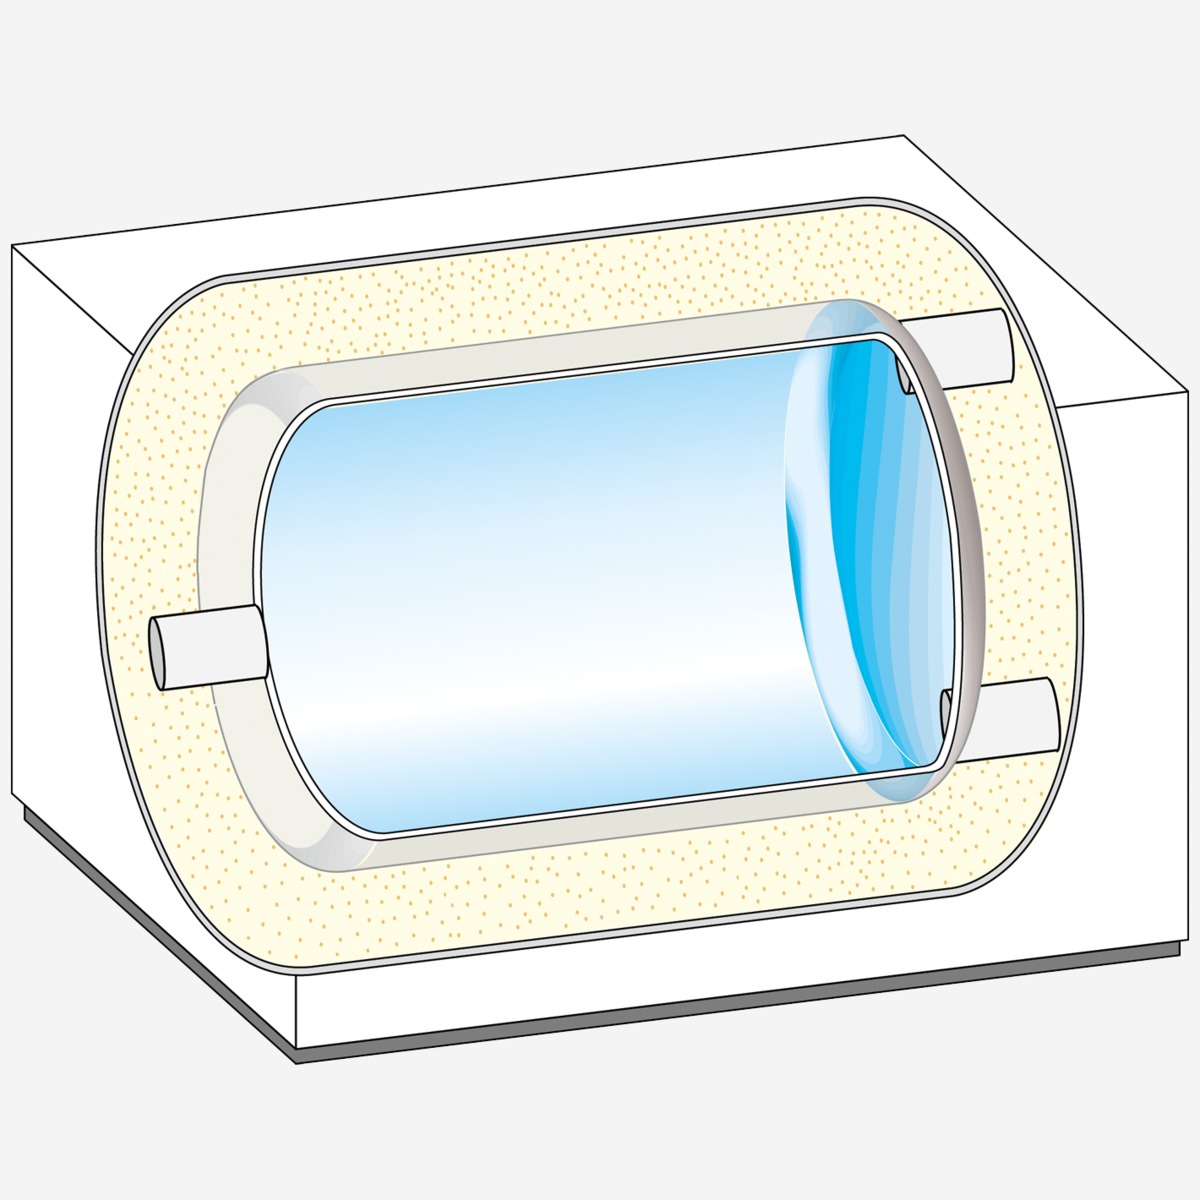 Weishaupt Energie-Speicher WES 120-H im Design der Luft/Wasser Wärmepumpe